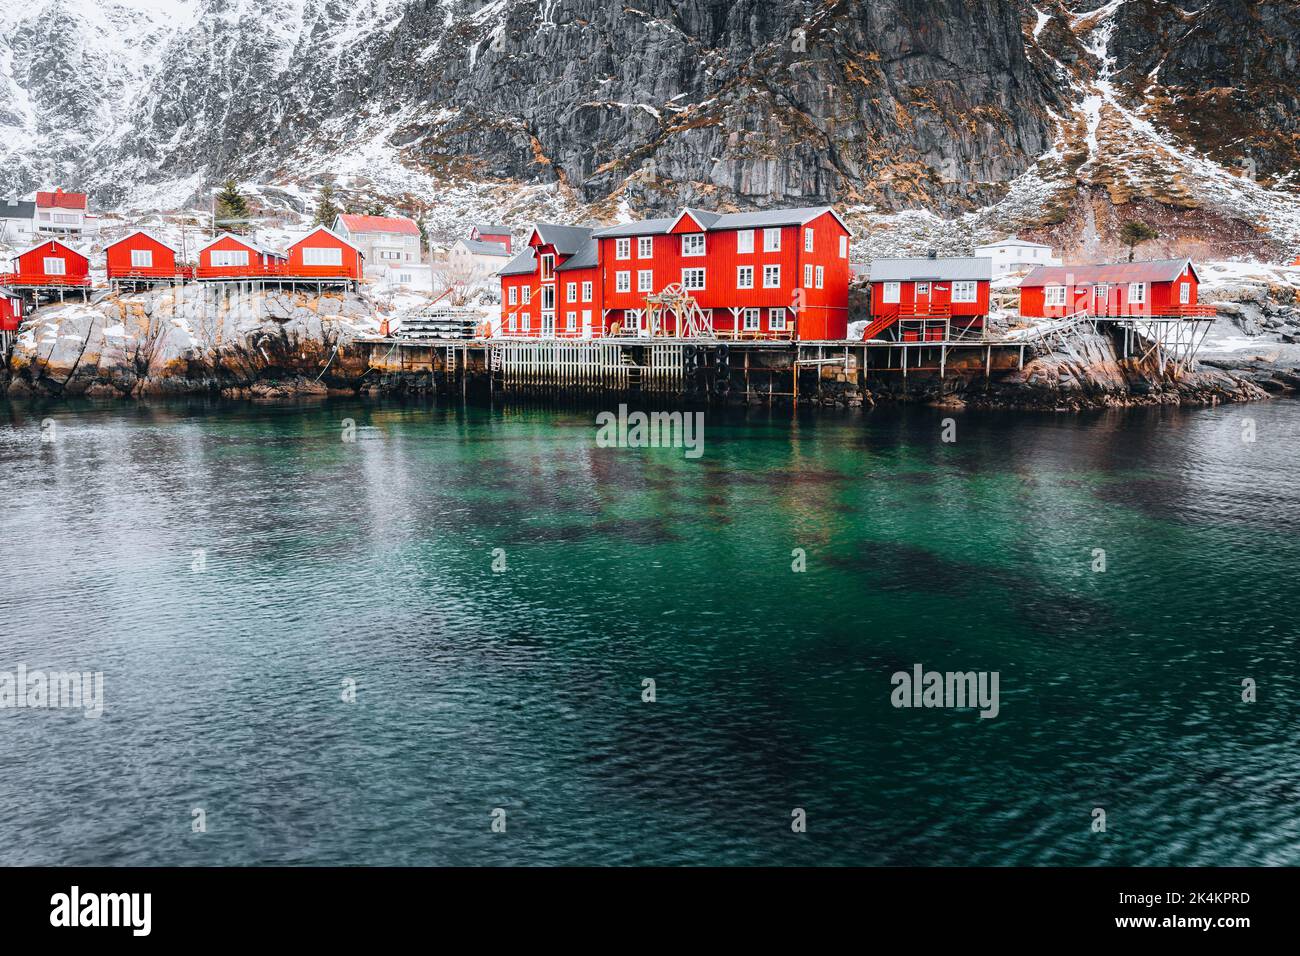 Villaggio chiamato A nelle isole Lofoten, Norvegia. Foto Stock